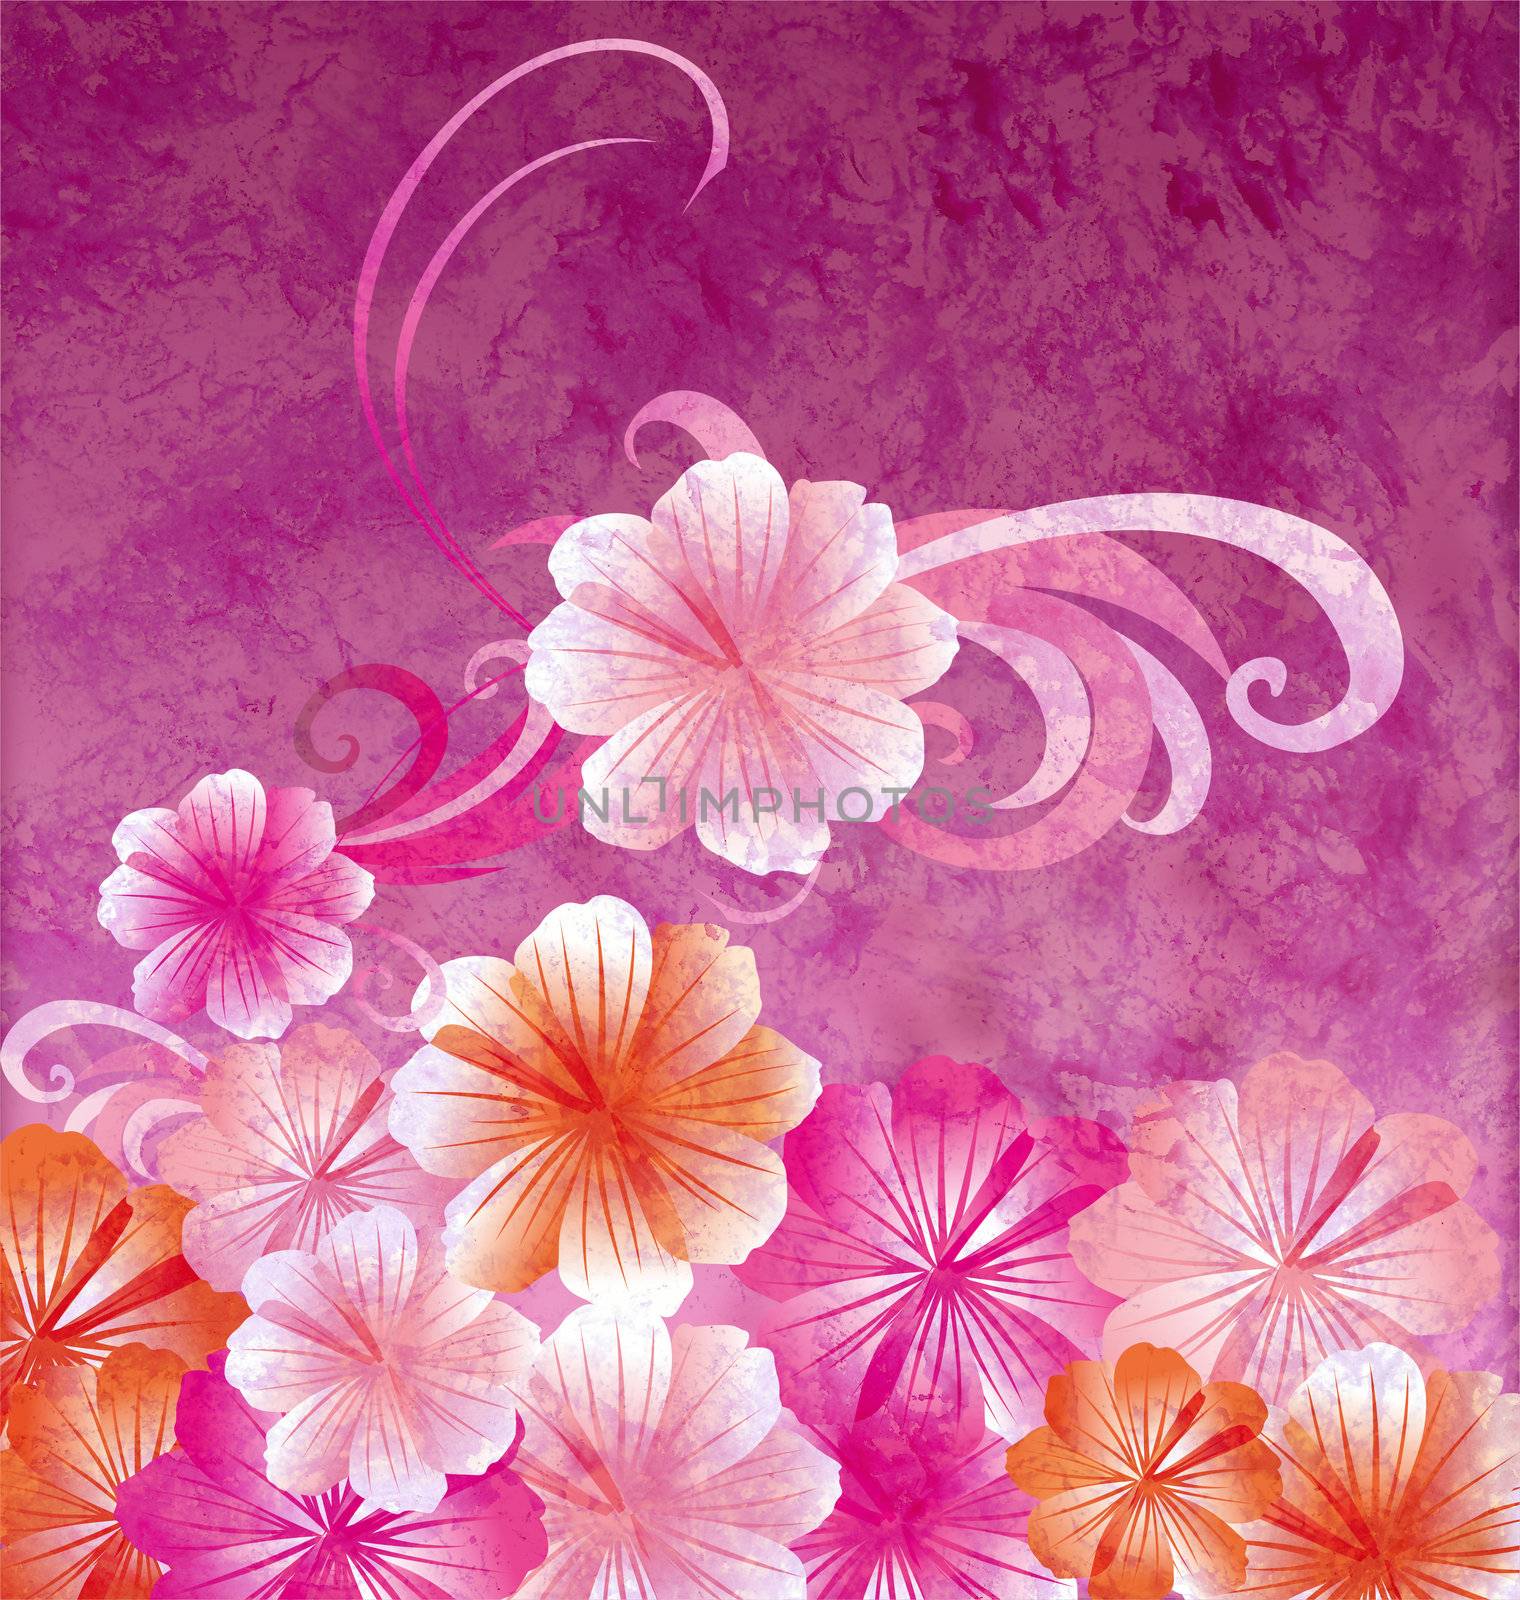 pink flowers on dark pink background grunge illustration